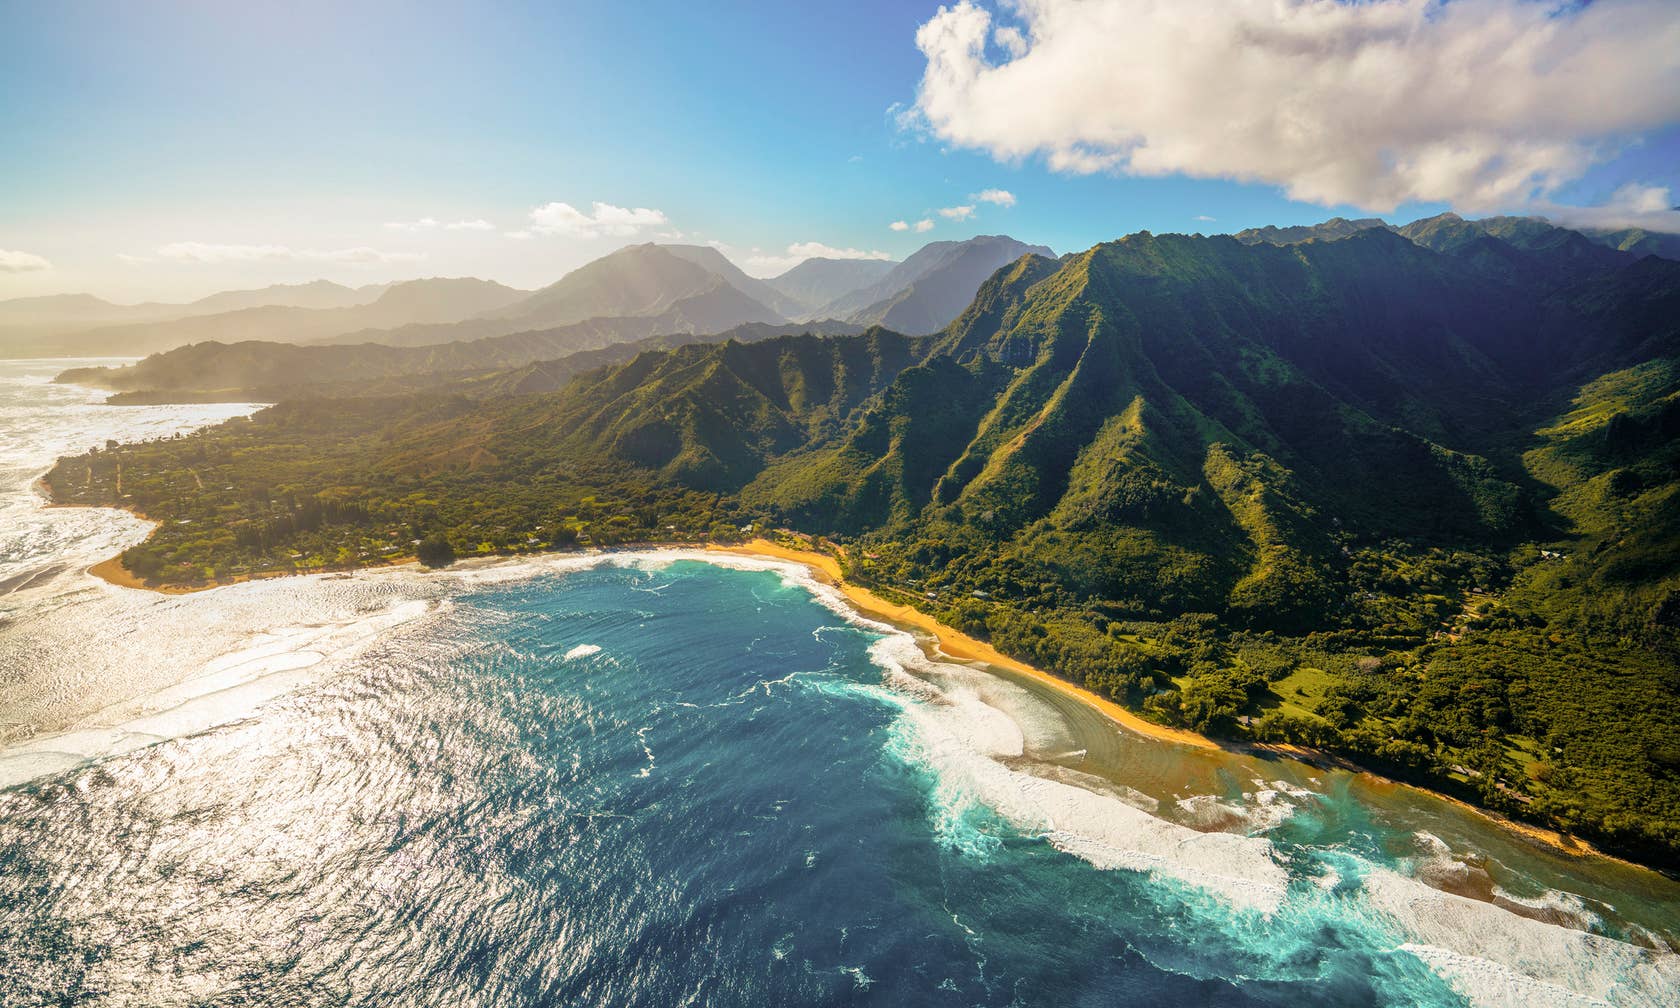 Bérbeadó nyaralók itt: Kauai